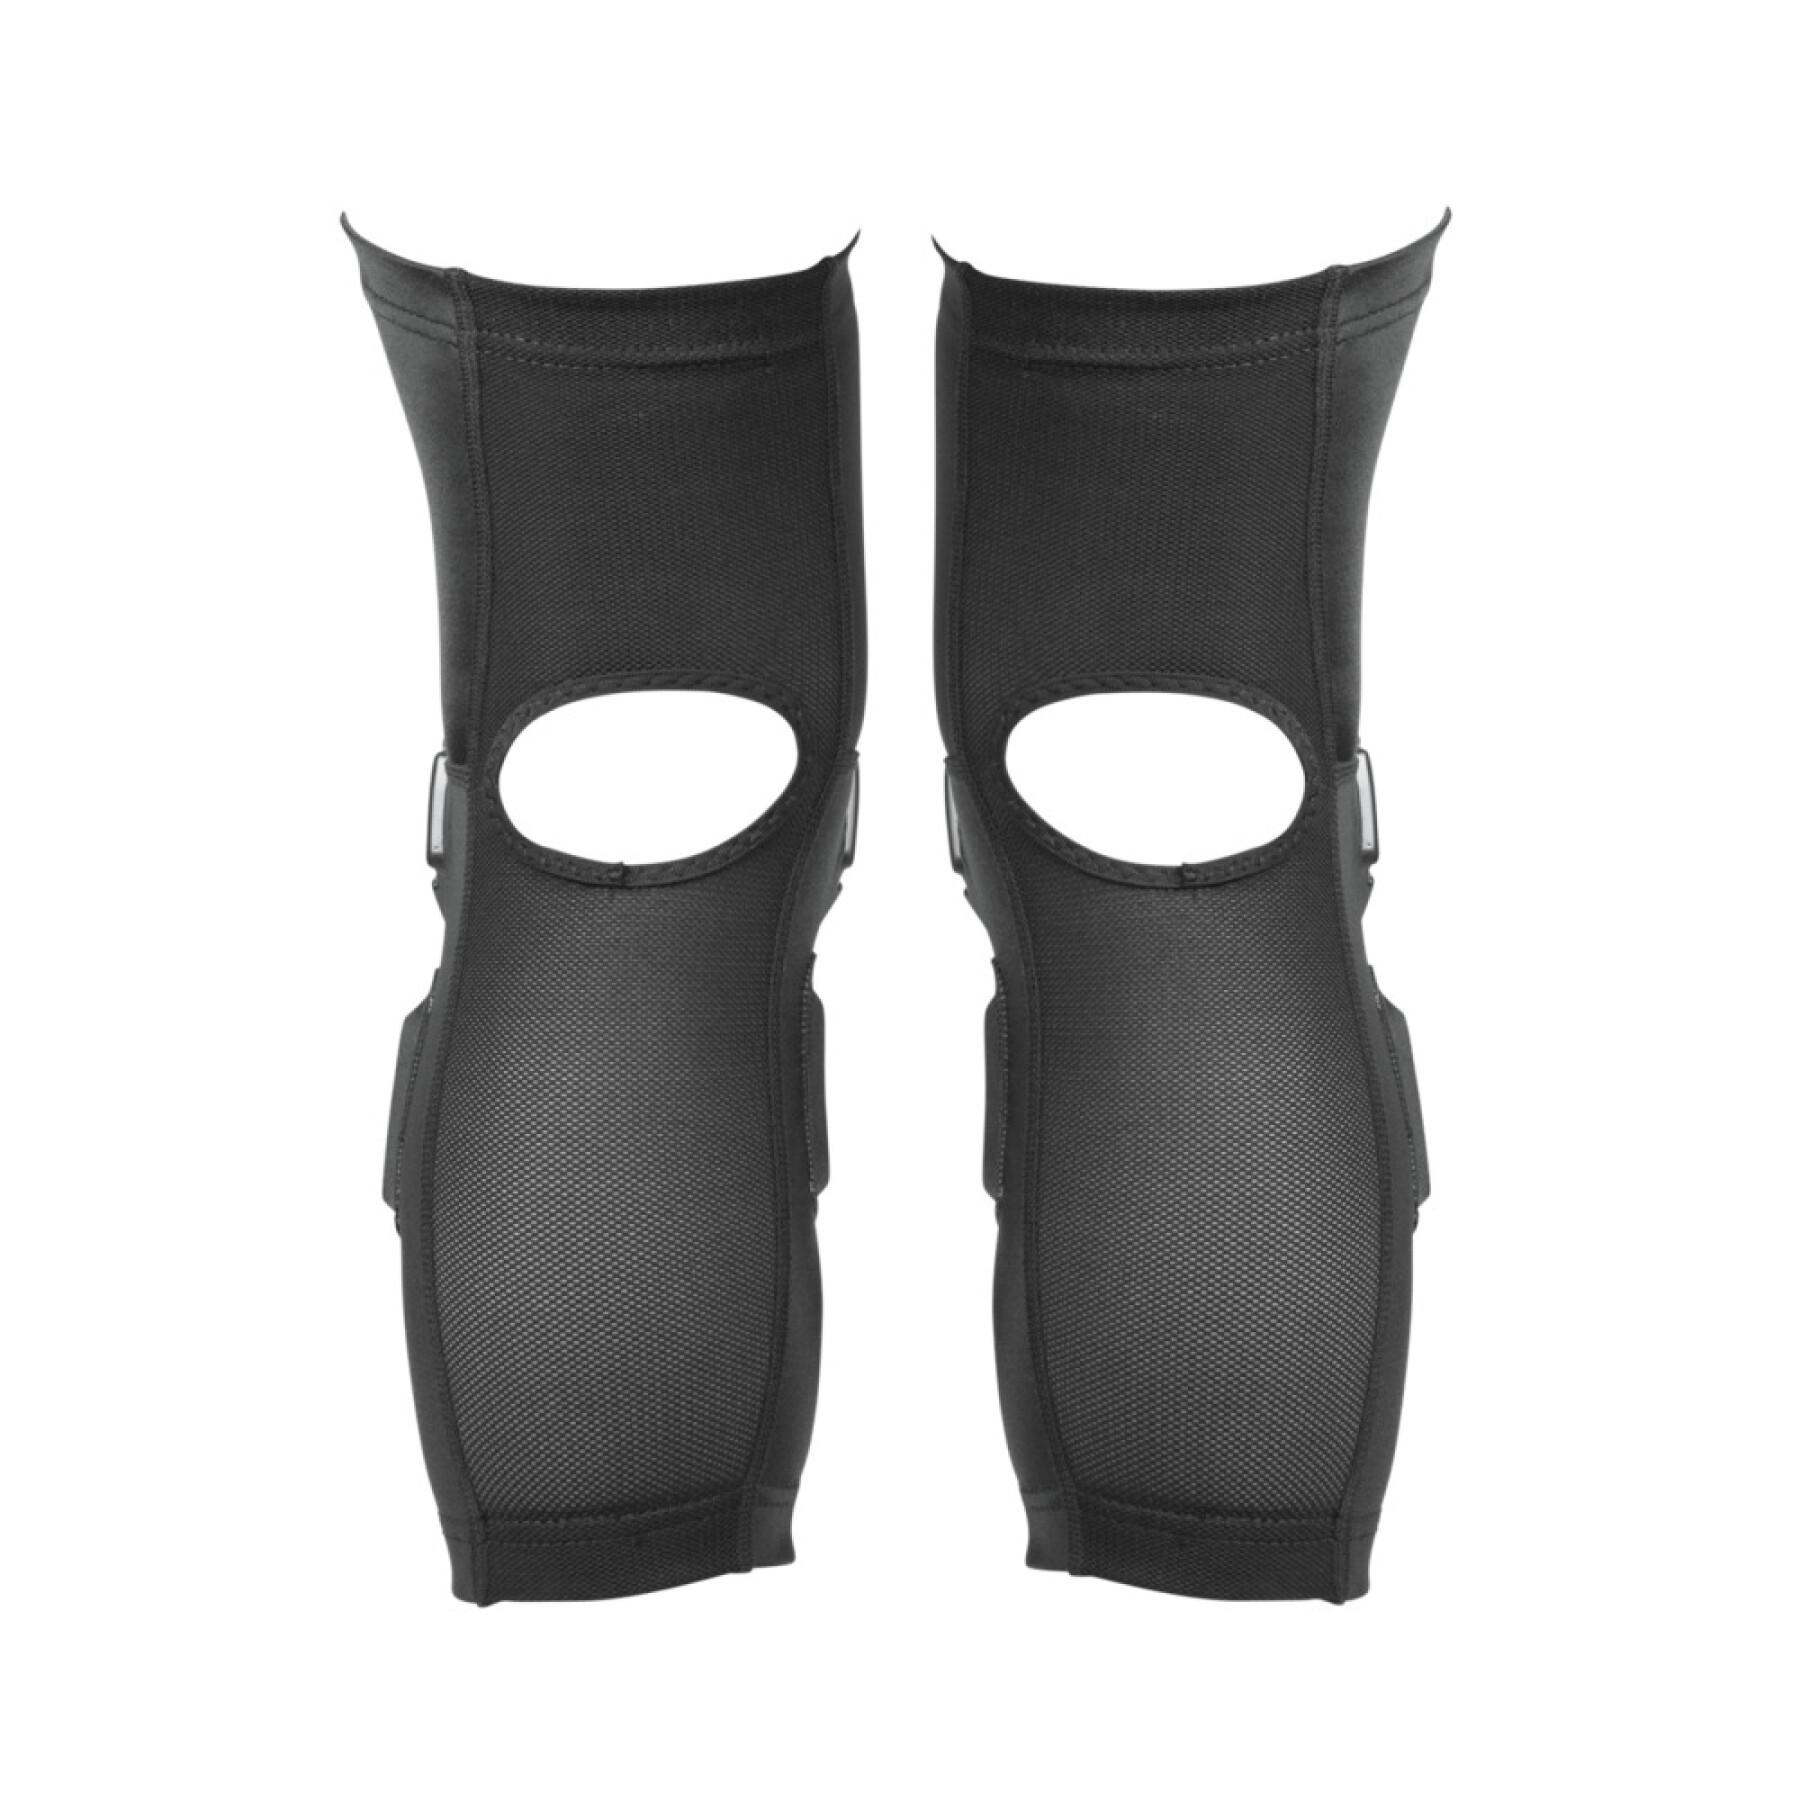 Protecção dos joelhos para bicicletas TSG Sleeve Joint